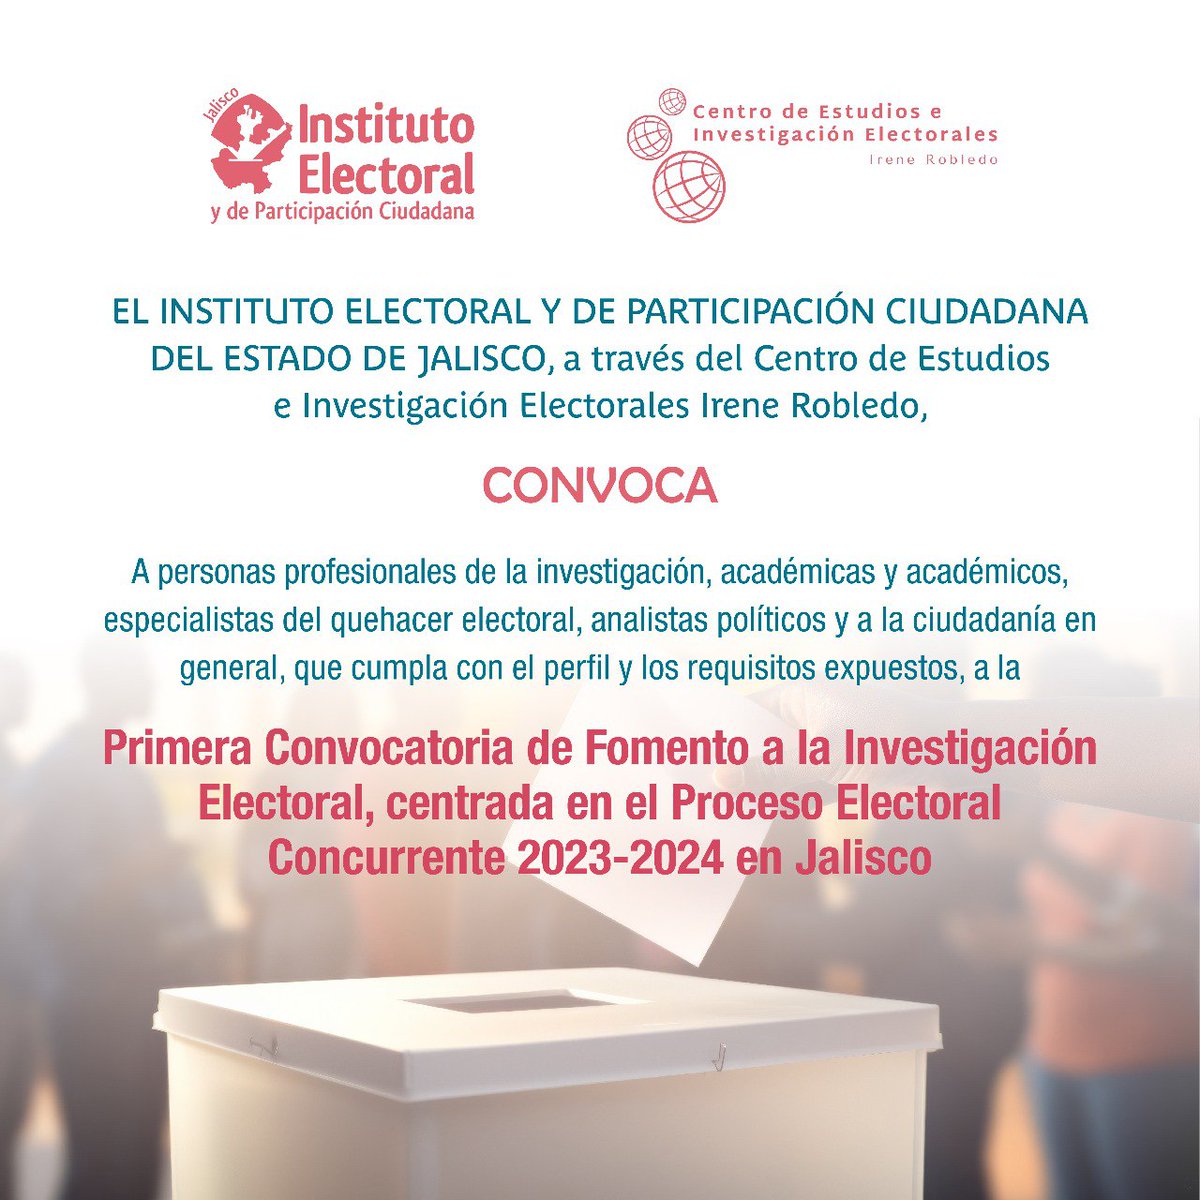 El IEPC te invita participar en la 1er convocatoria de Fomento a la Investigación Electoral, centrada en las #Elecciones2024MX en Jalisco, podrás consultar las bases, temáticas y registro en el siguiente link: 
➡️iepc.cc/NrRpvd9

#TuVozEsElPoder #IEPCesChido #EsNetaVota